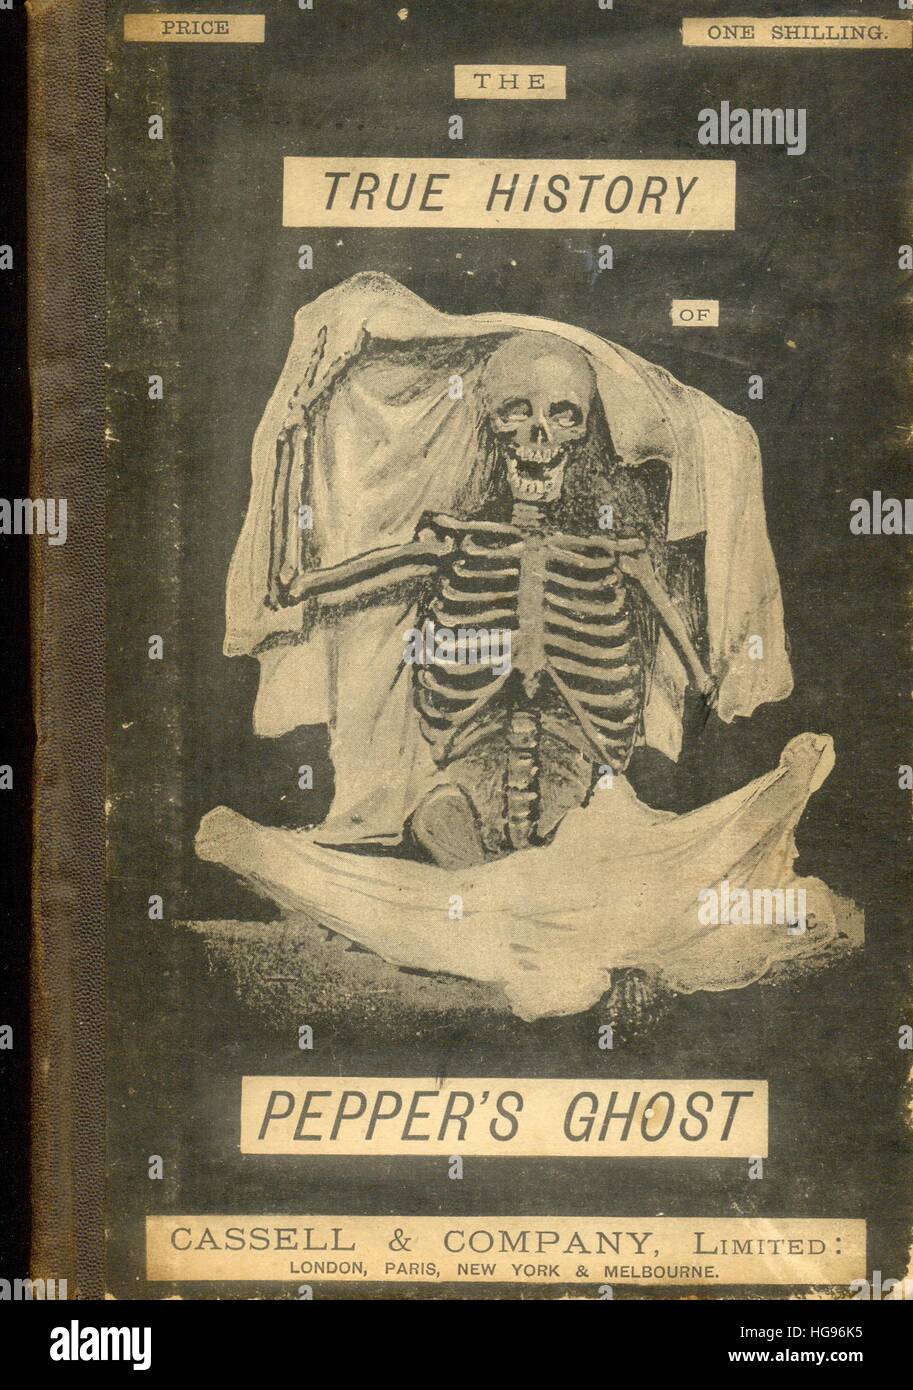 Couverture pour la vraie histoire de Pepper's Ghost Banque D'Images